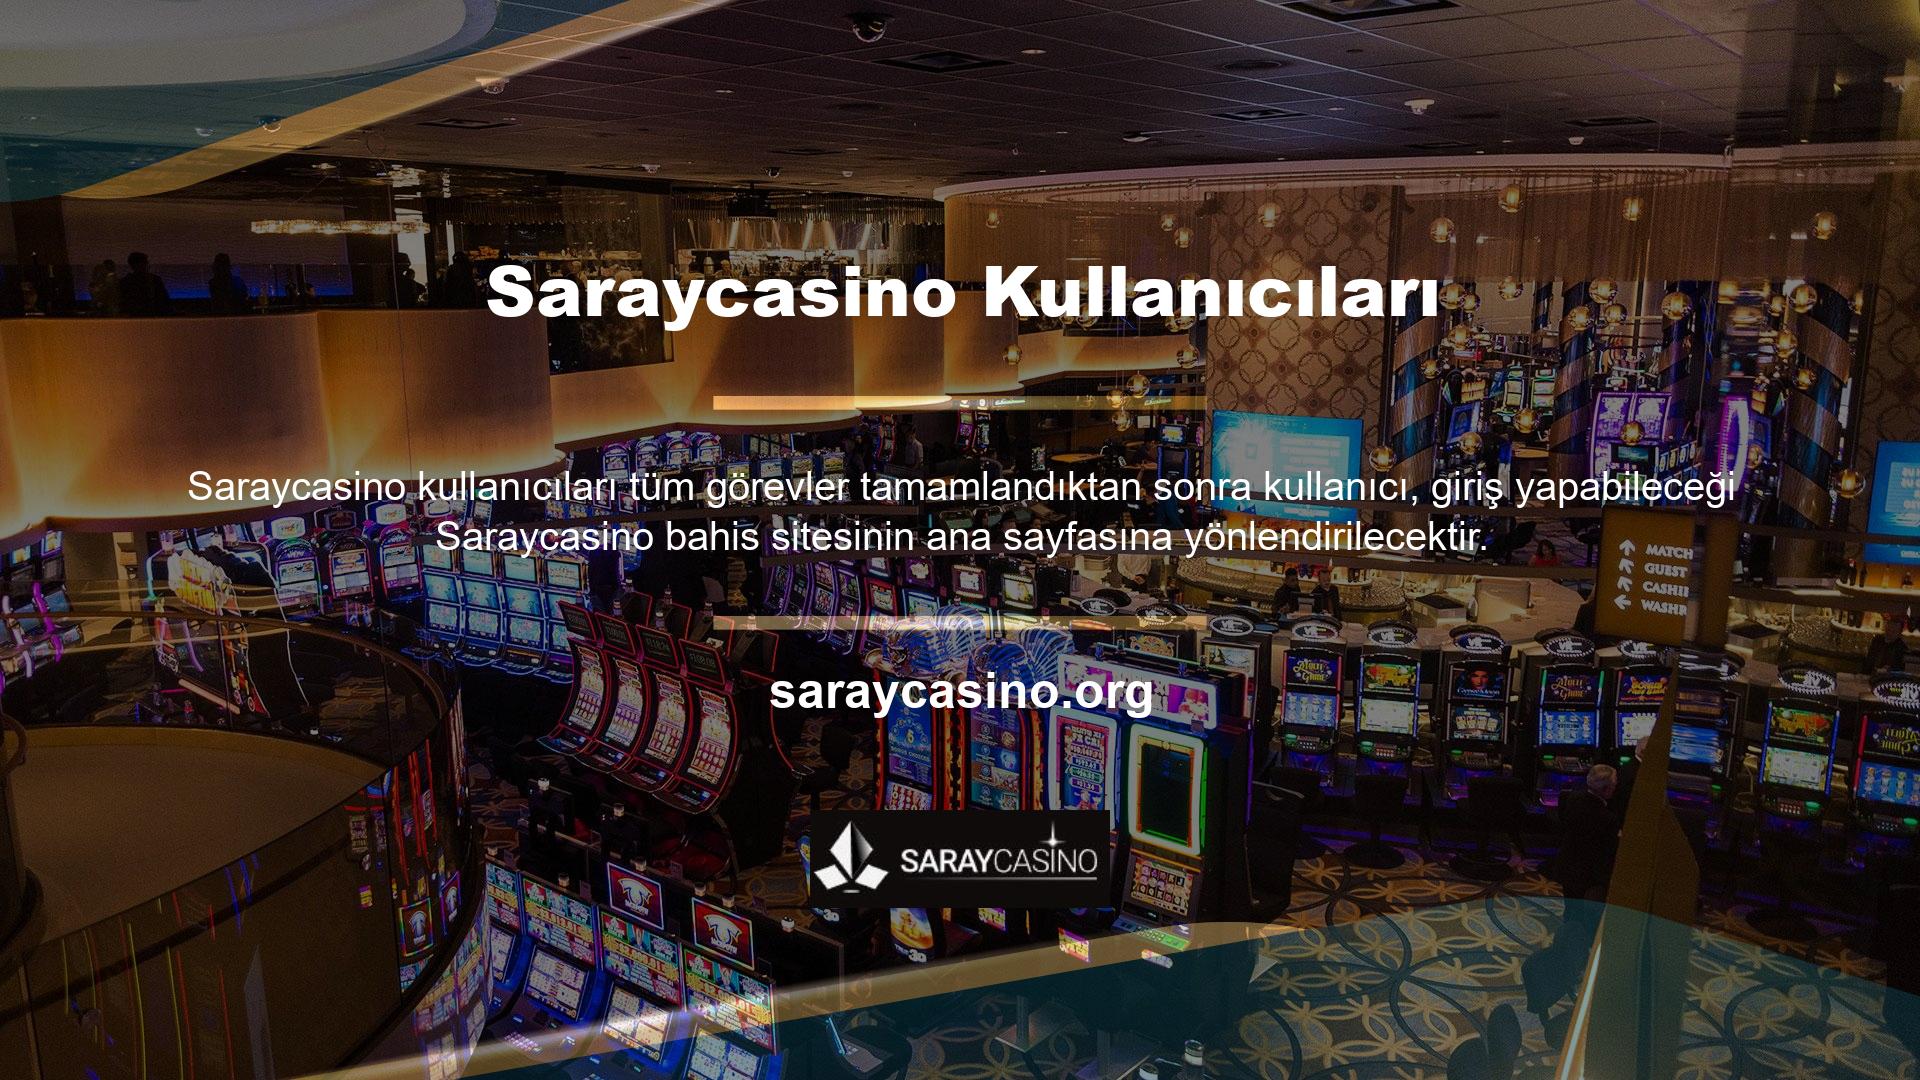 Saraycasino online sitesine katılarak üye olarak sağladıkları hoş geldin bonuslarından yararlanabilirsiniz